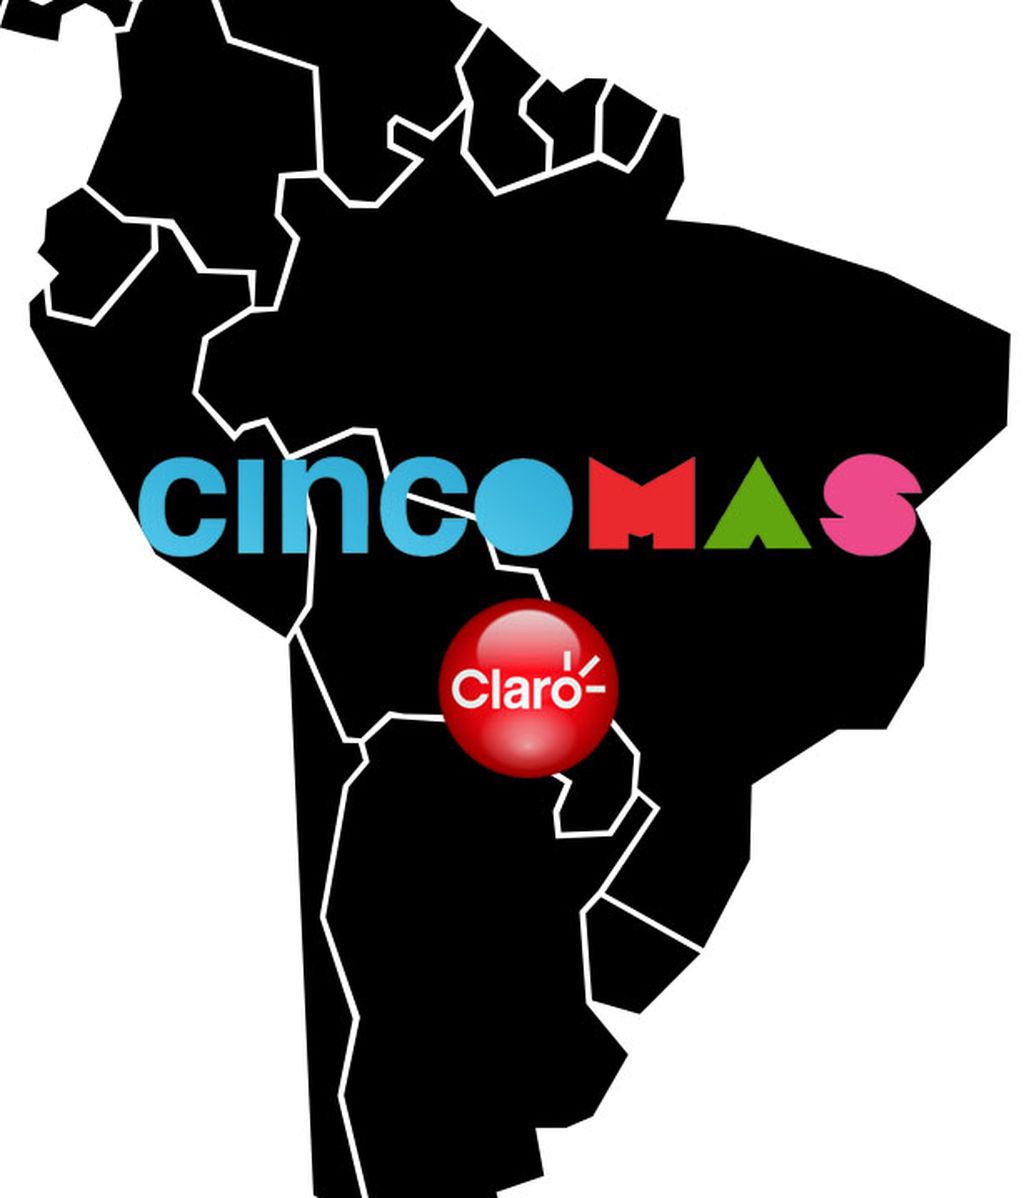 CincoMAS comienza sus emisiones regulares en Chile, Paraguay, Perú y Ecuador tras alcanzar un acuerdo de distribución con ClaroTV